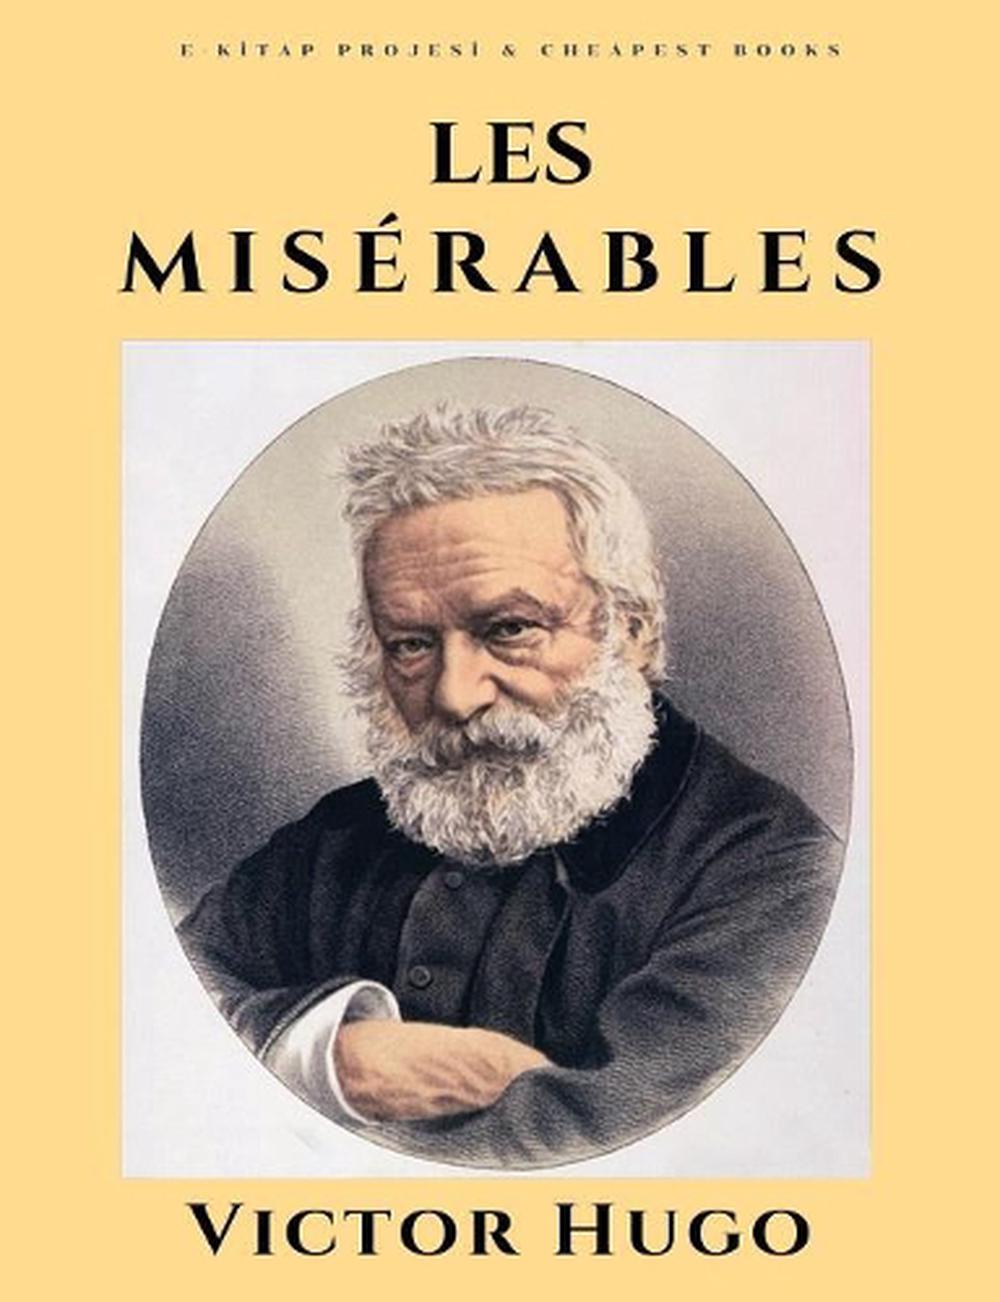 les misérables book pdf